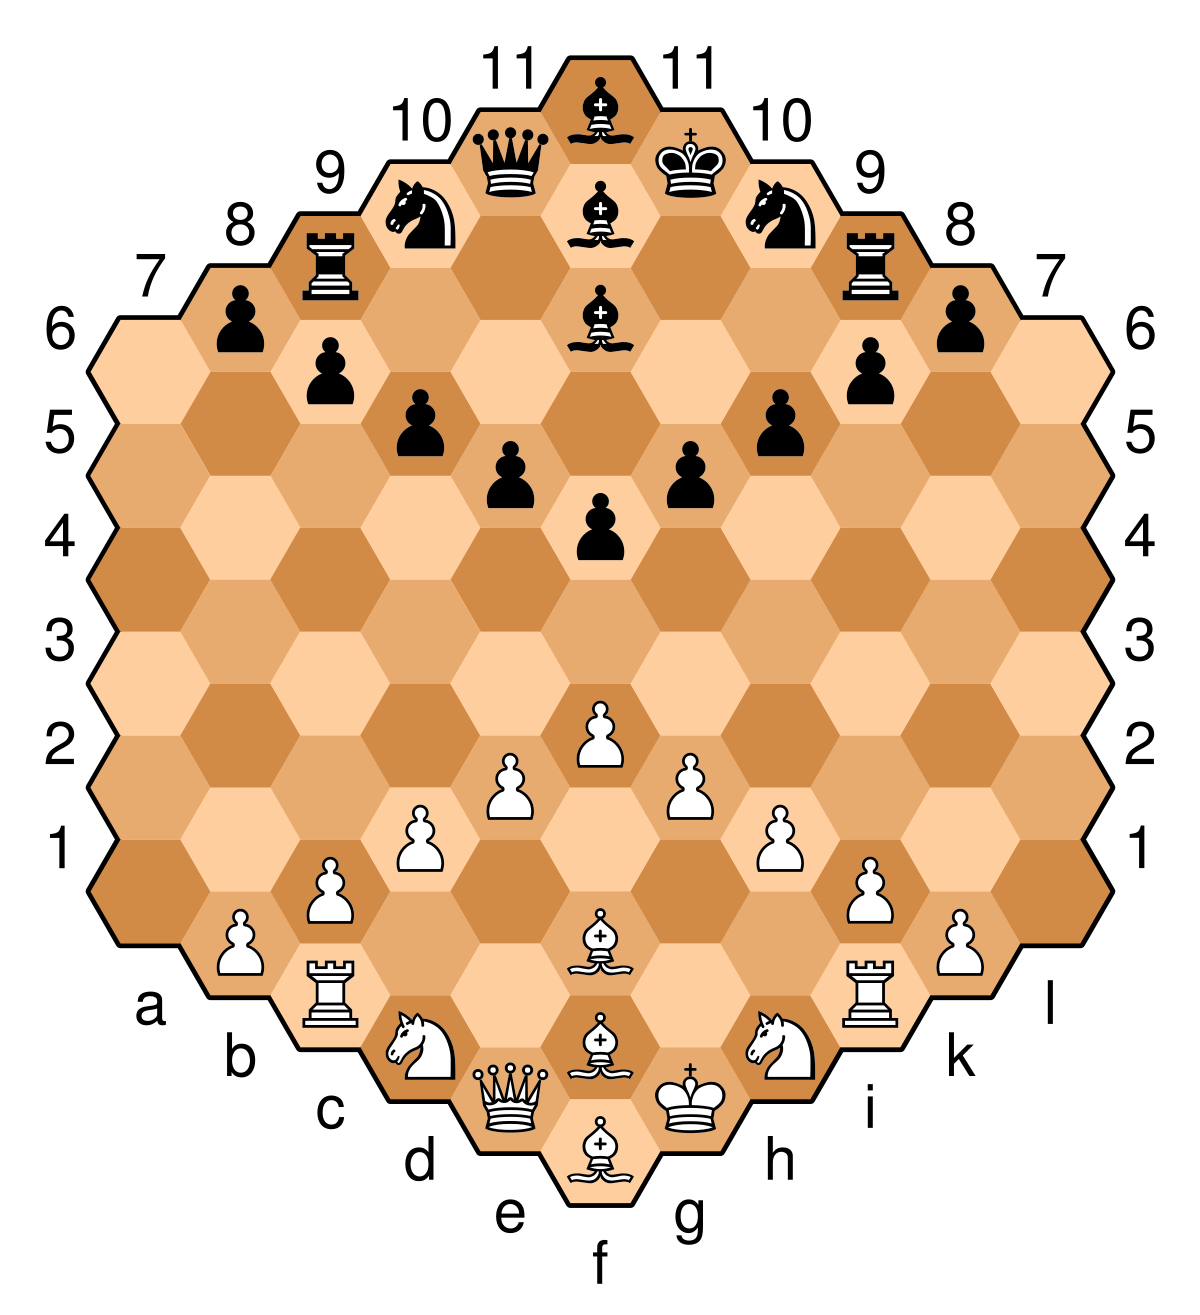 Hexagonal chess - Wikipedia